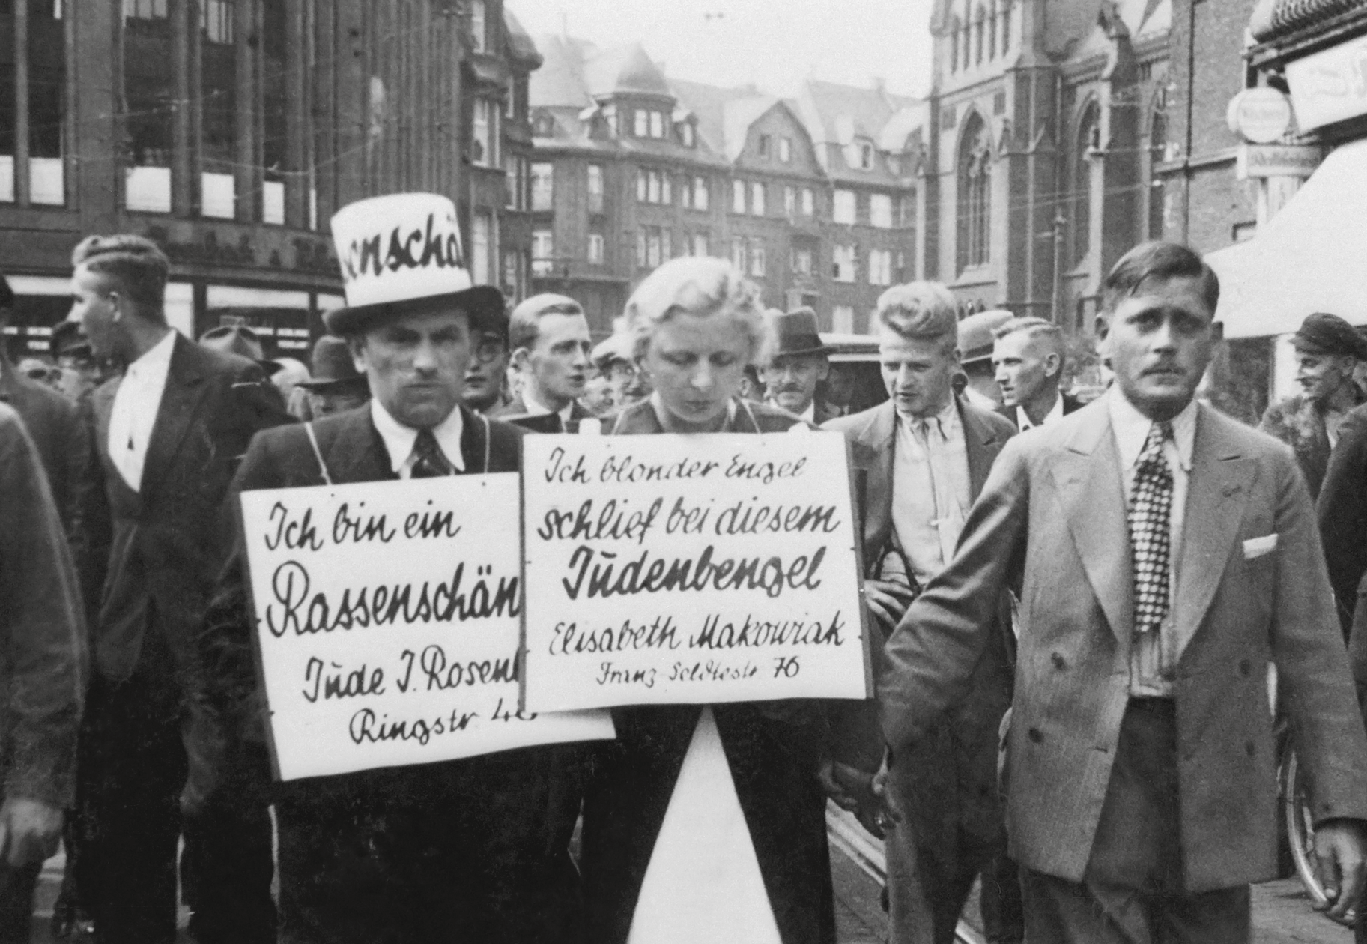 Schwarz-Weiß-Foto: Öffentliche Demütigung und Anprangerung von Juda Rosenberg und Elisabeth Makowiak, Menschen mit Plakaten mit antisemitischen Aussagen